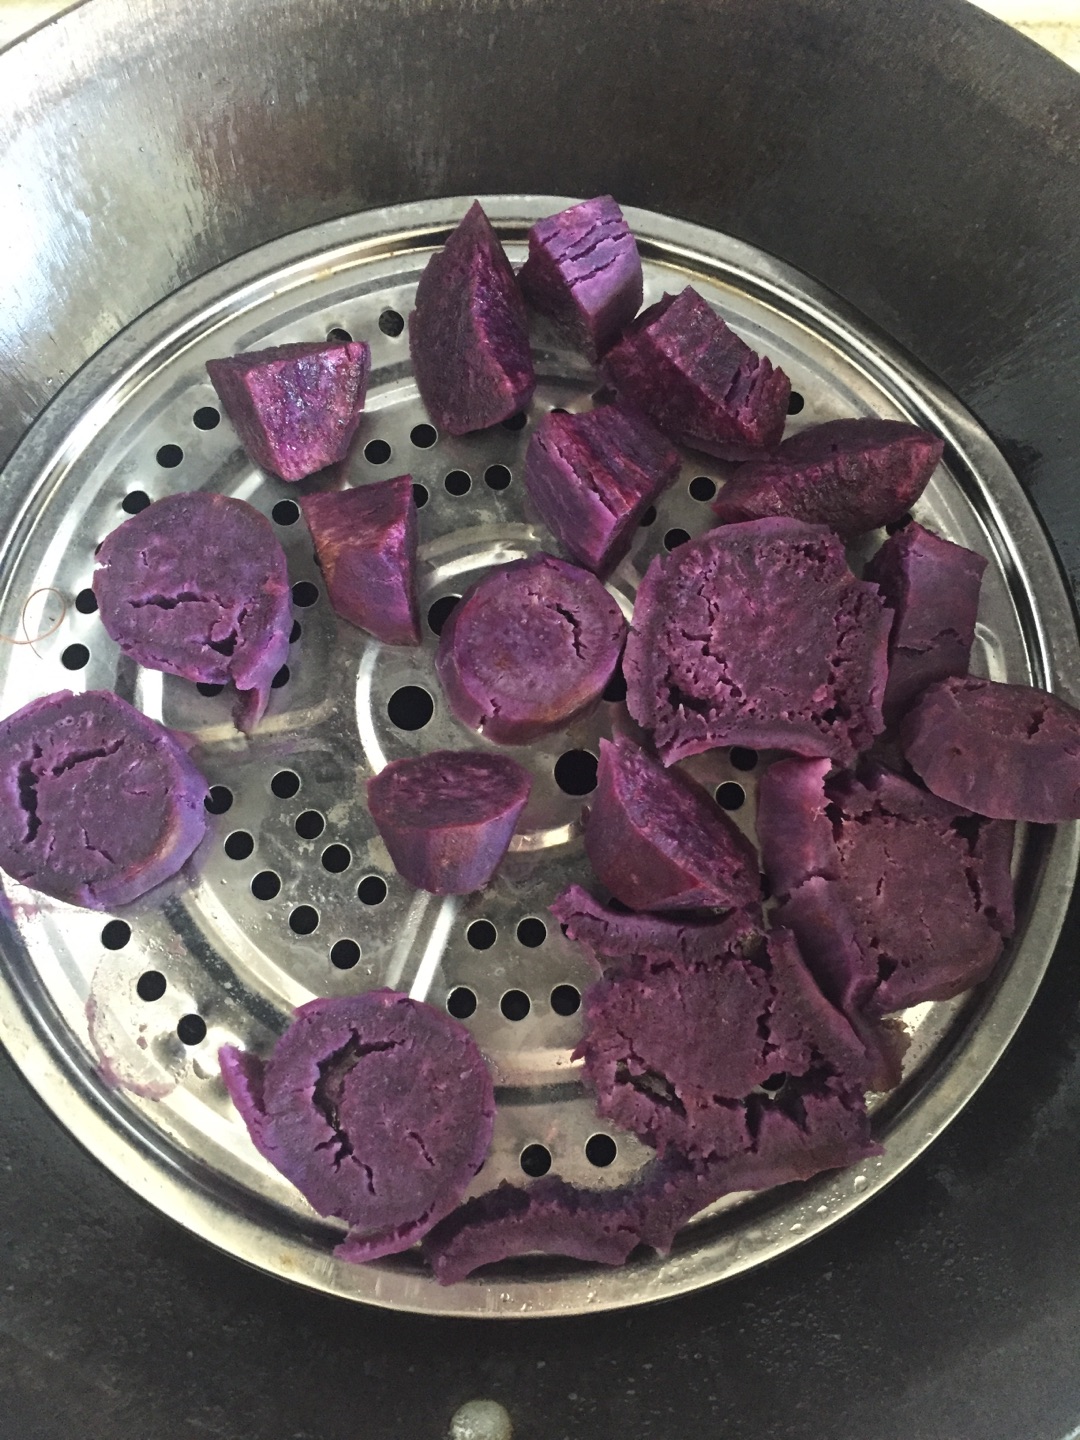 紫薯糯米丸子,紫薯糯米丸子的家常做法 - 美食杰紫薯糯米丸子做法大全